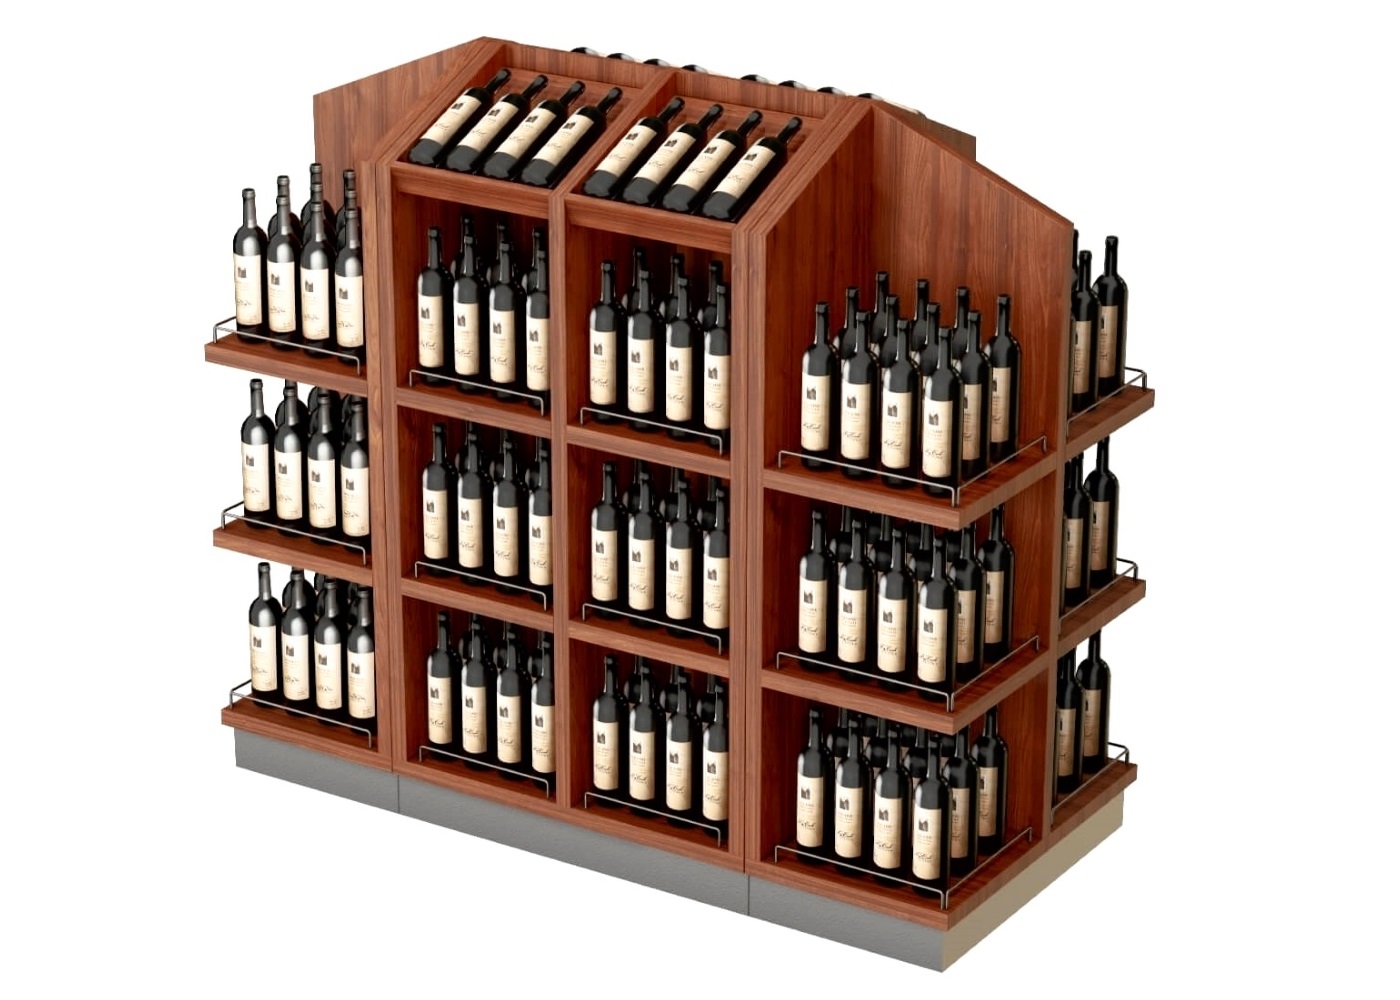 Weinregal aus Holz. Mittelraumregal für Weine und Getränke. Regalsystem von A-West